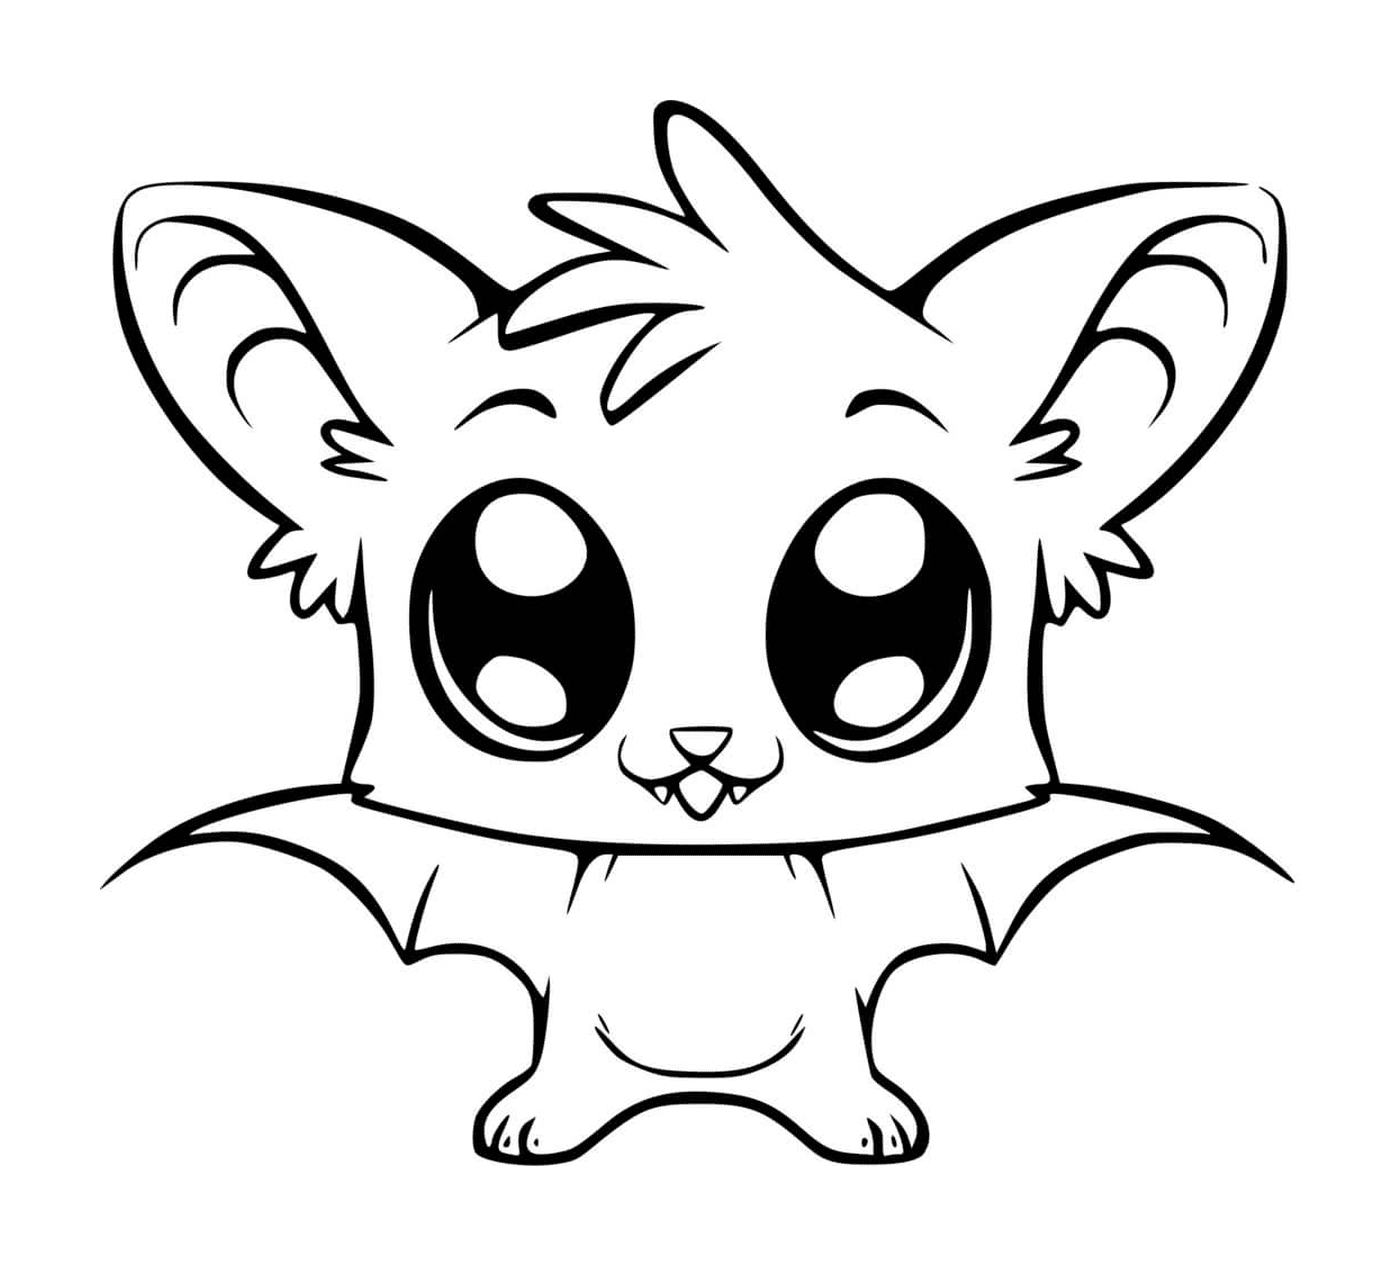  adorable kawaii bat 